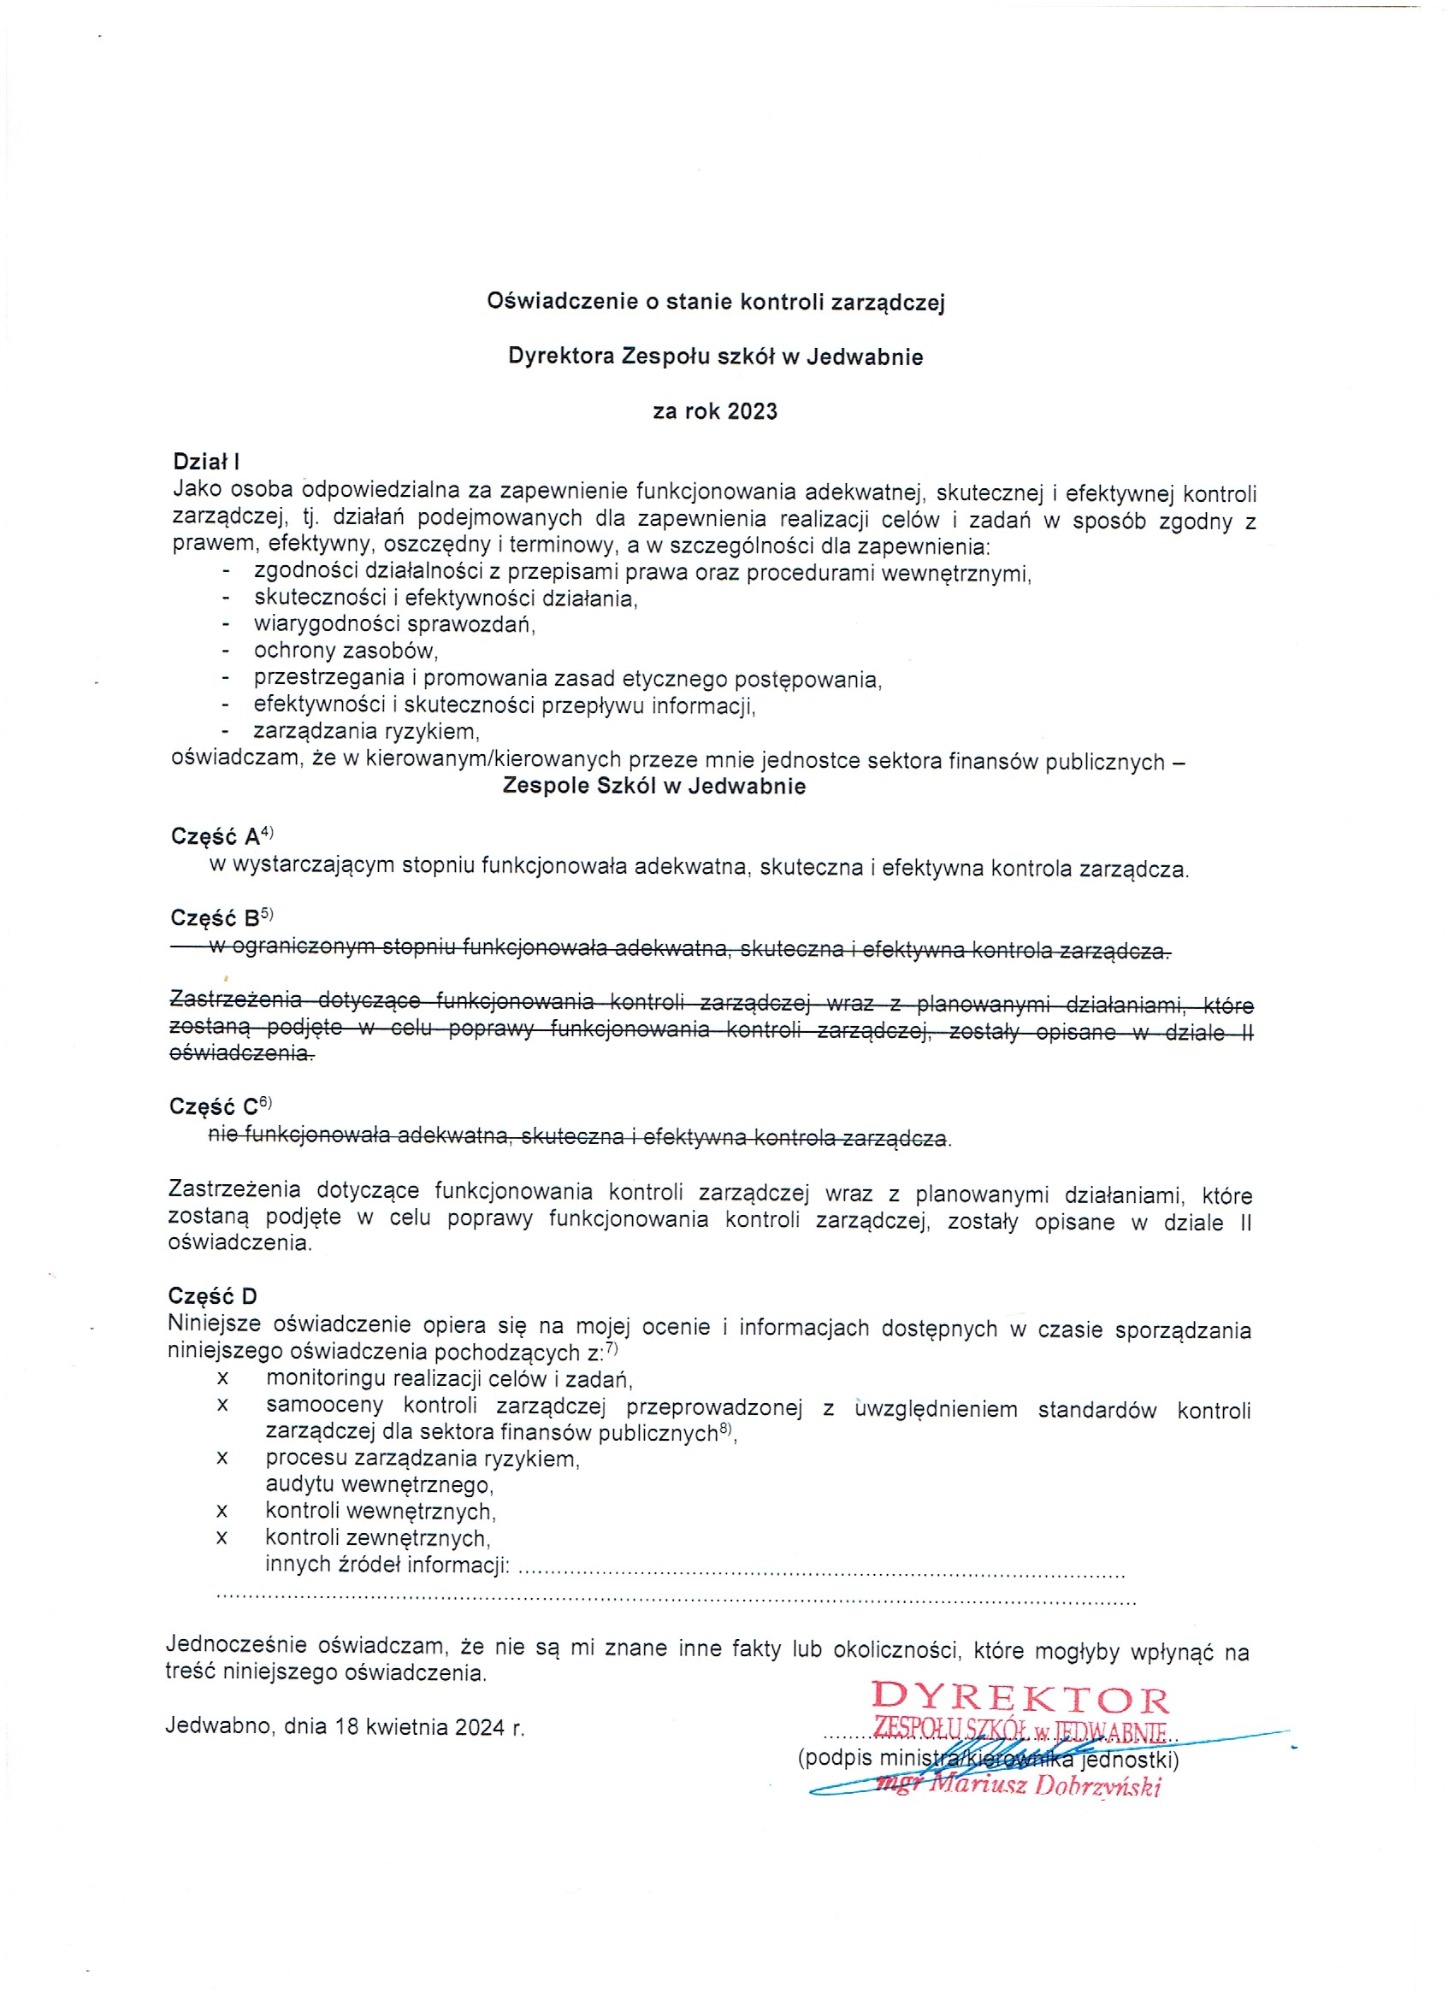 Oświadczenie o stanie kontroli zarządczej  Dyrektora Zespołu Szkół w Jedwabnie za rok 2023